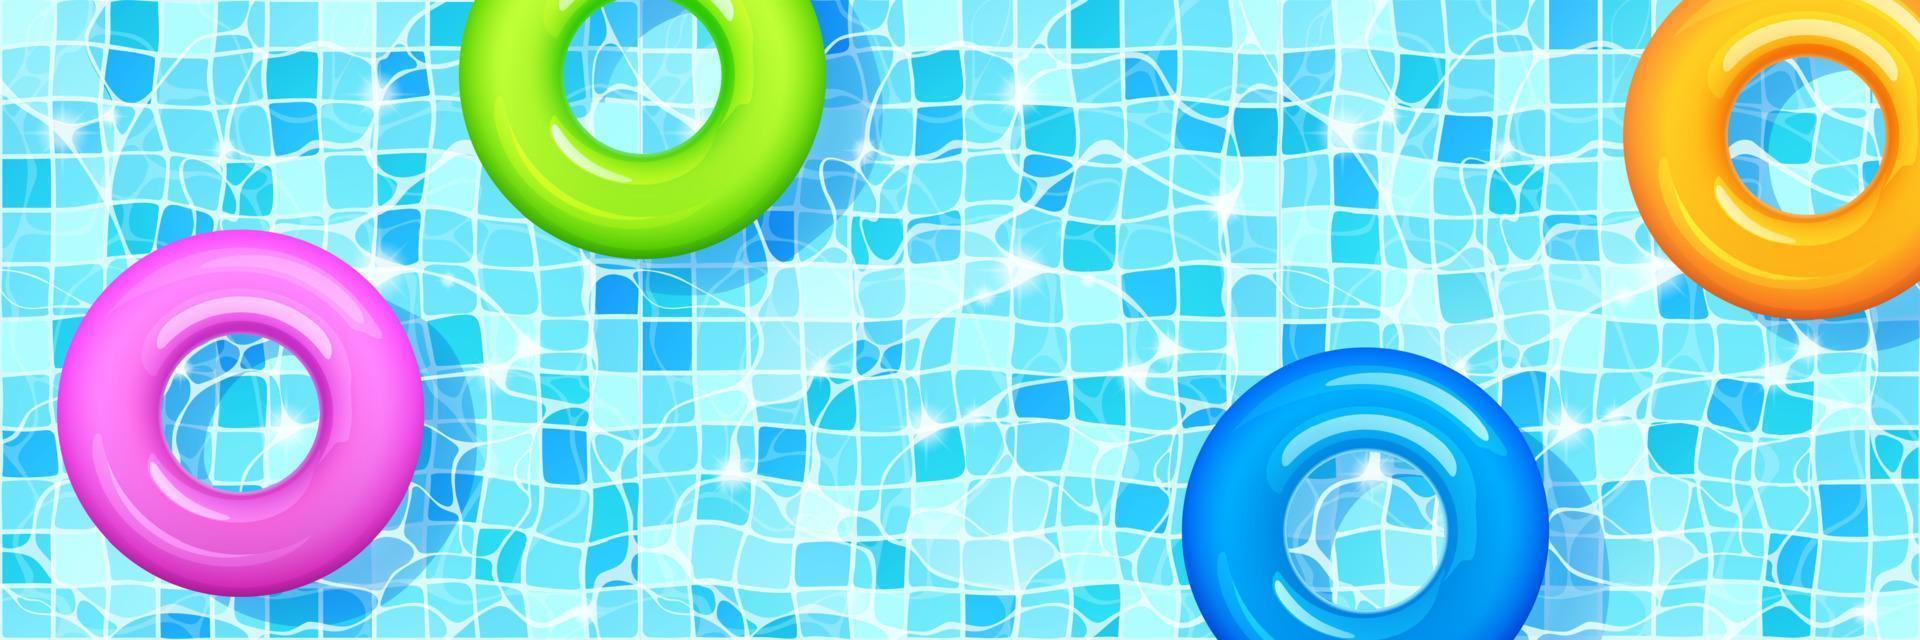 simning slå samman med färgrik uppblåsbar ringar. vektor